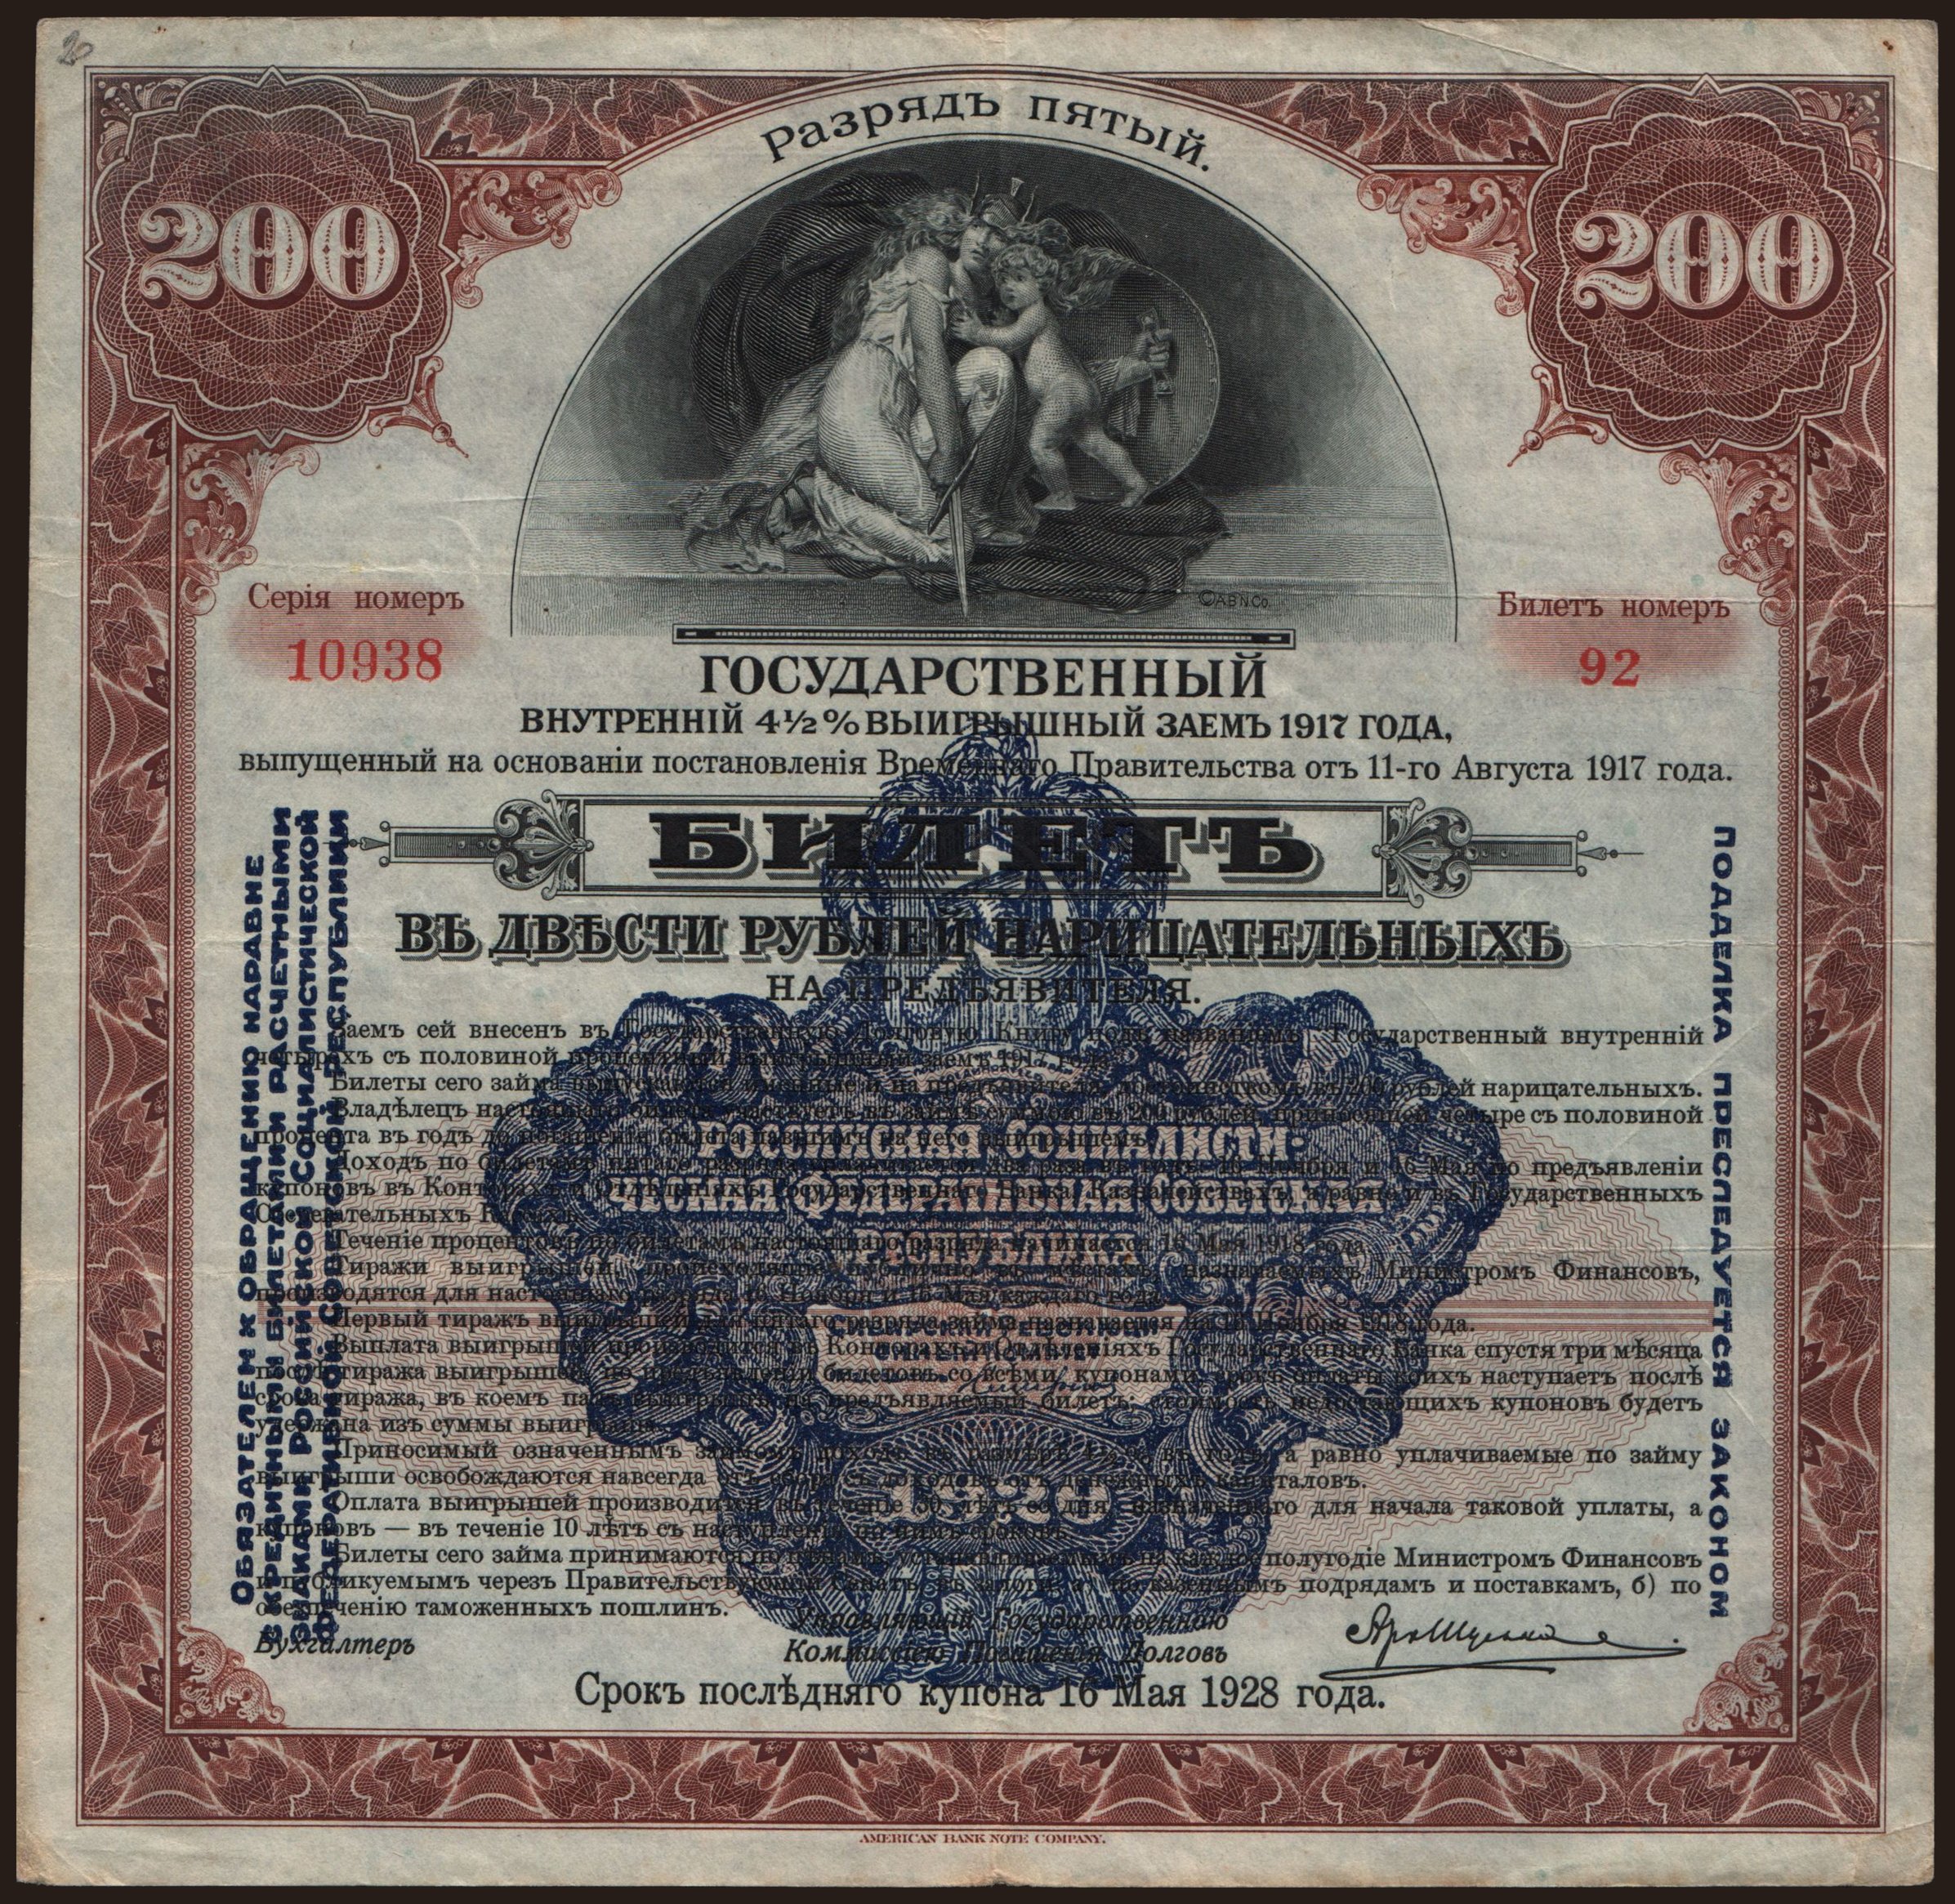 Siberia, 200 rubel, 1920